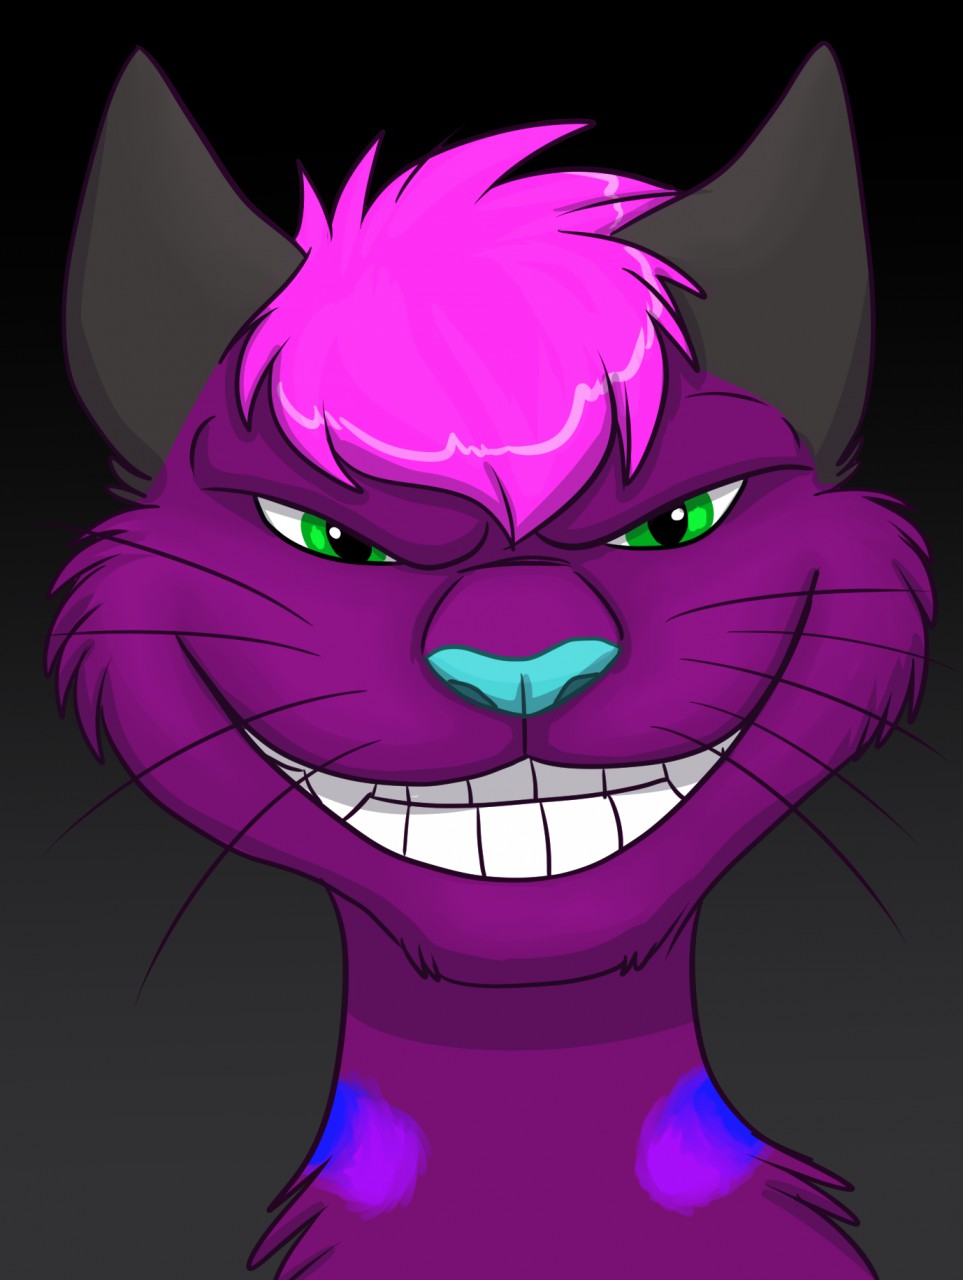 evil laugh cat